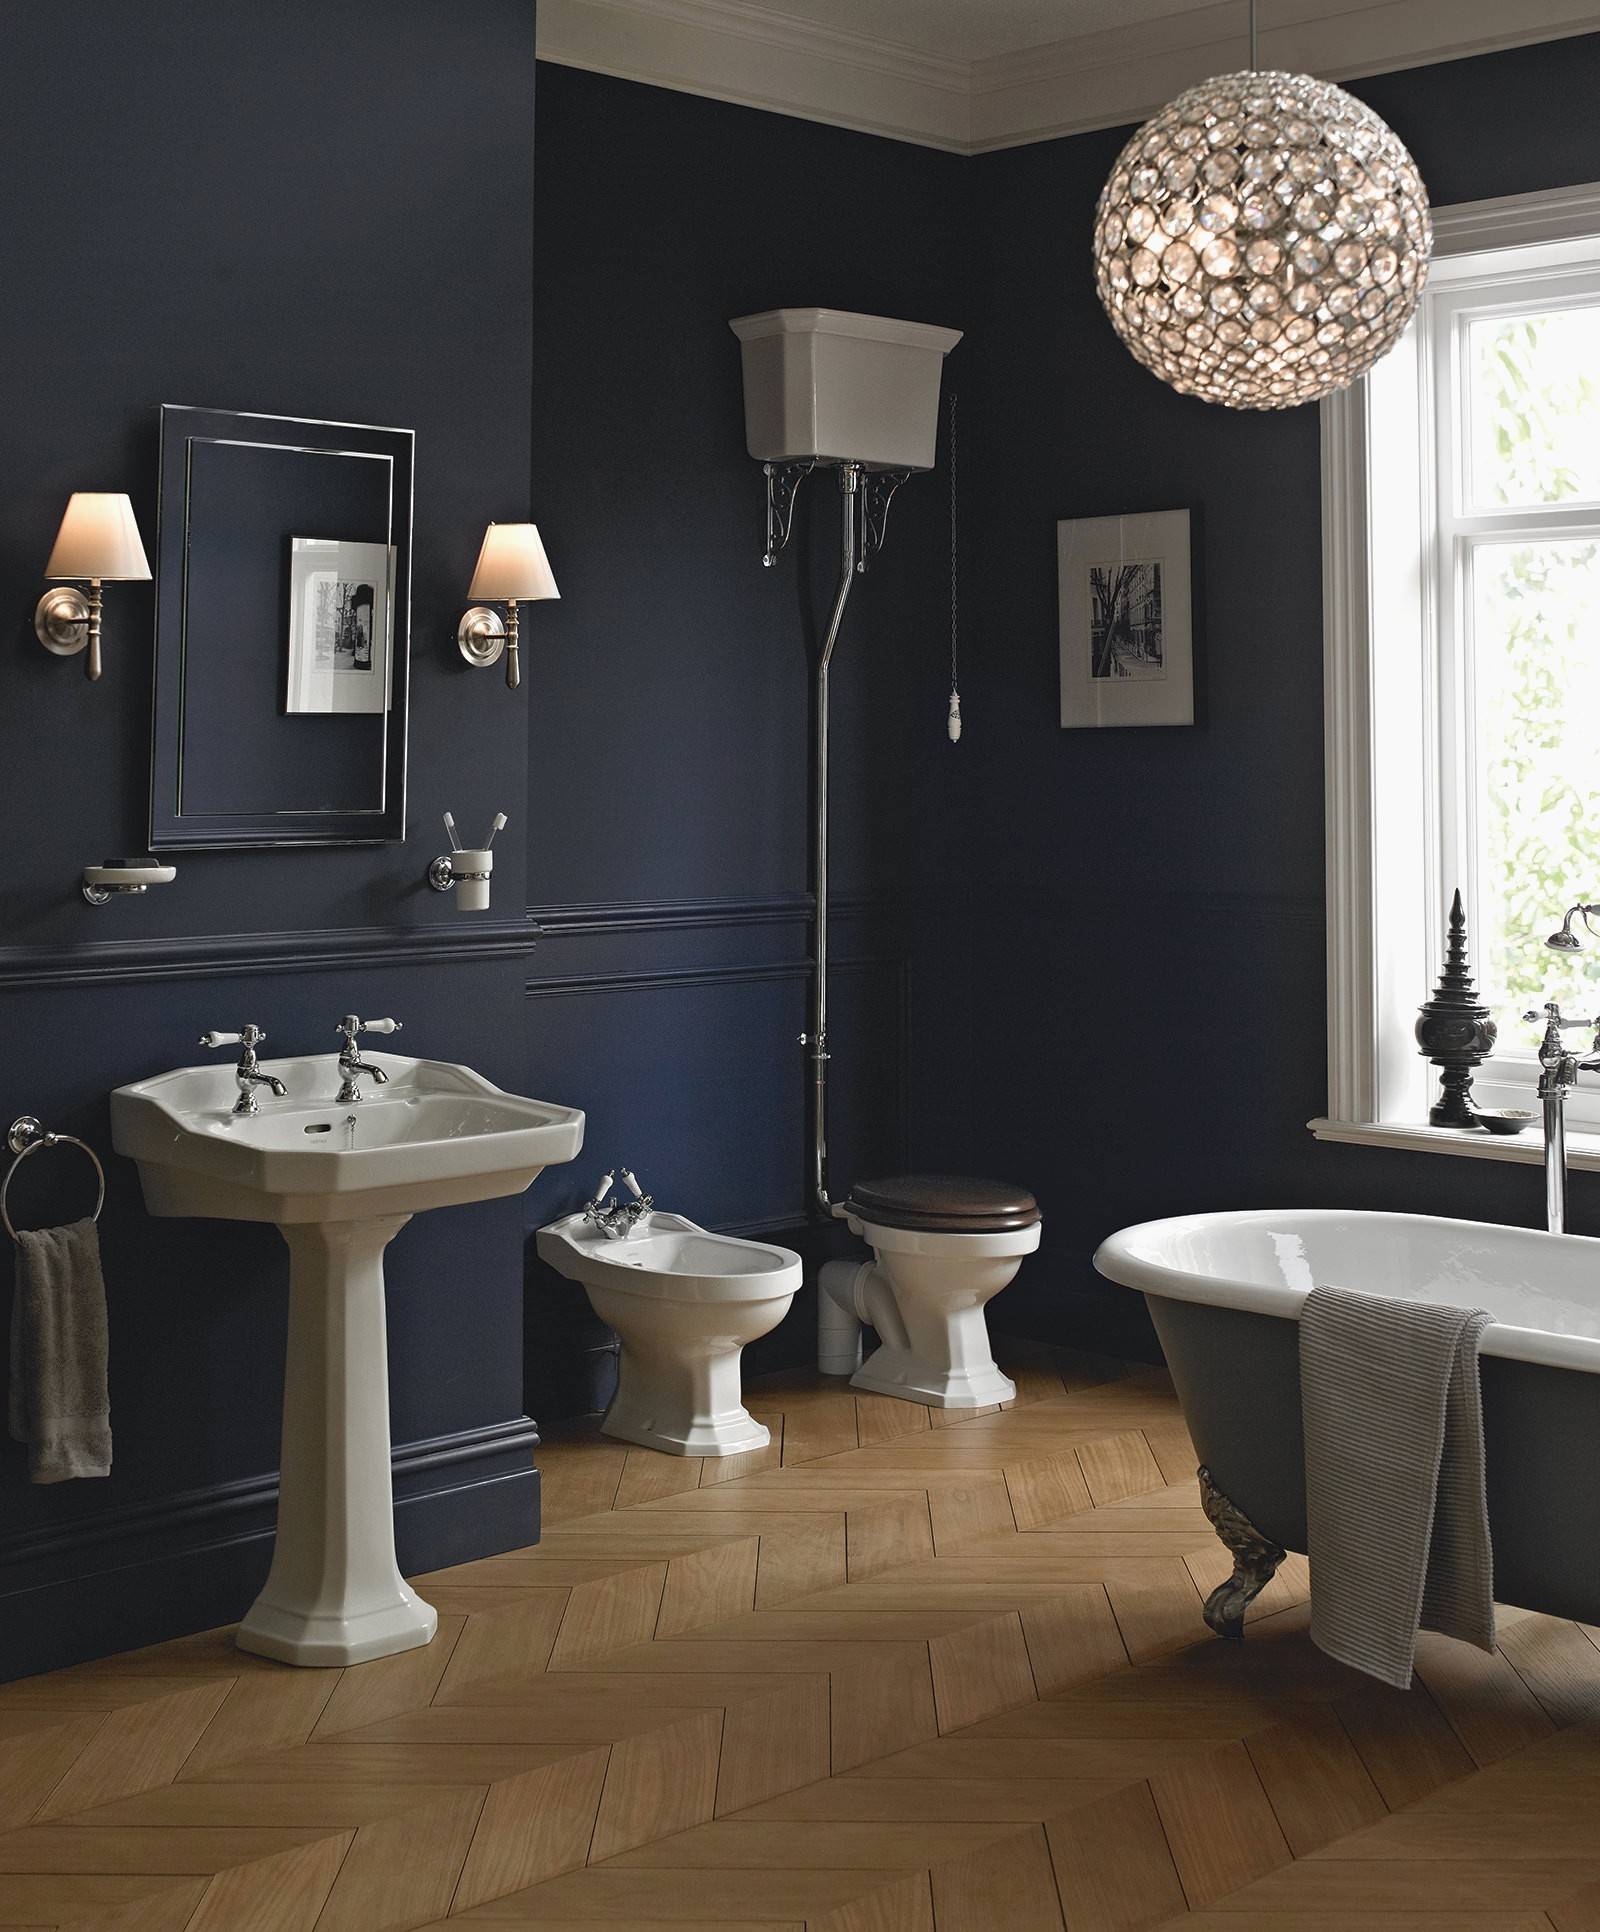 Với sự thiết kế độc đáo đưa gam màu xanh cổ điển vào trong không gian phòng tắm mang đến cho căn hộ thêm tinh tế, quyến rũ